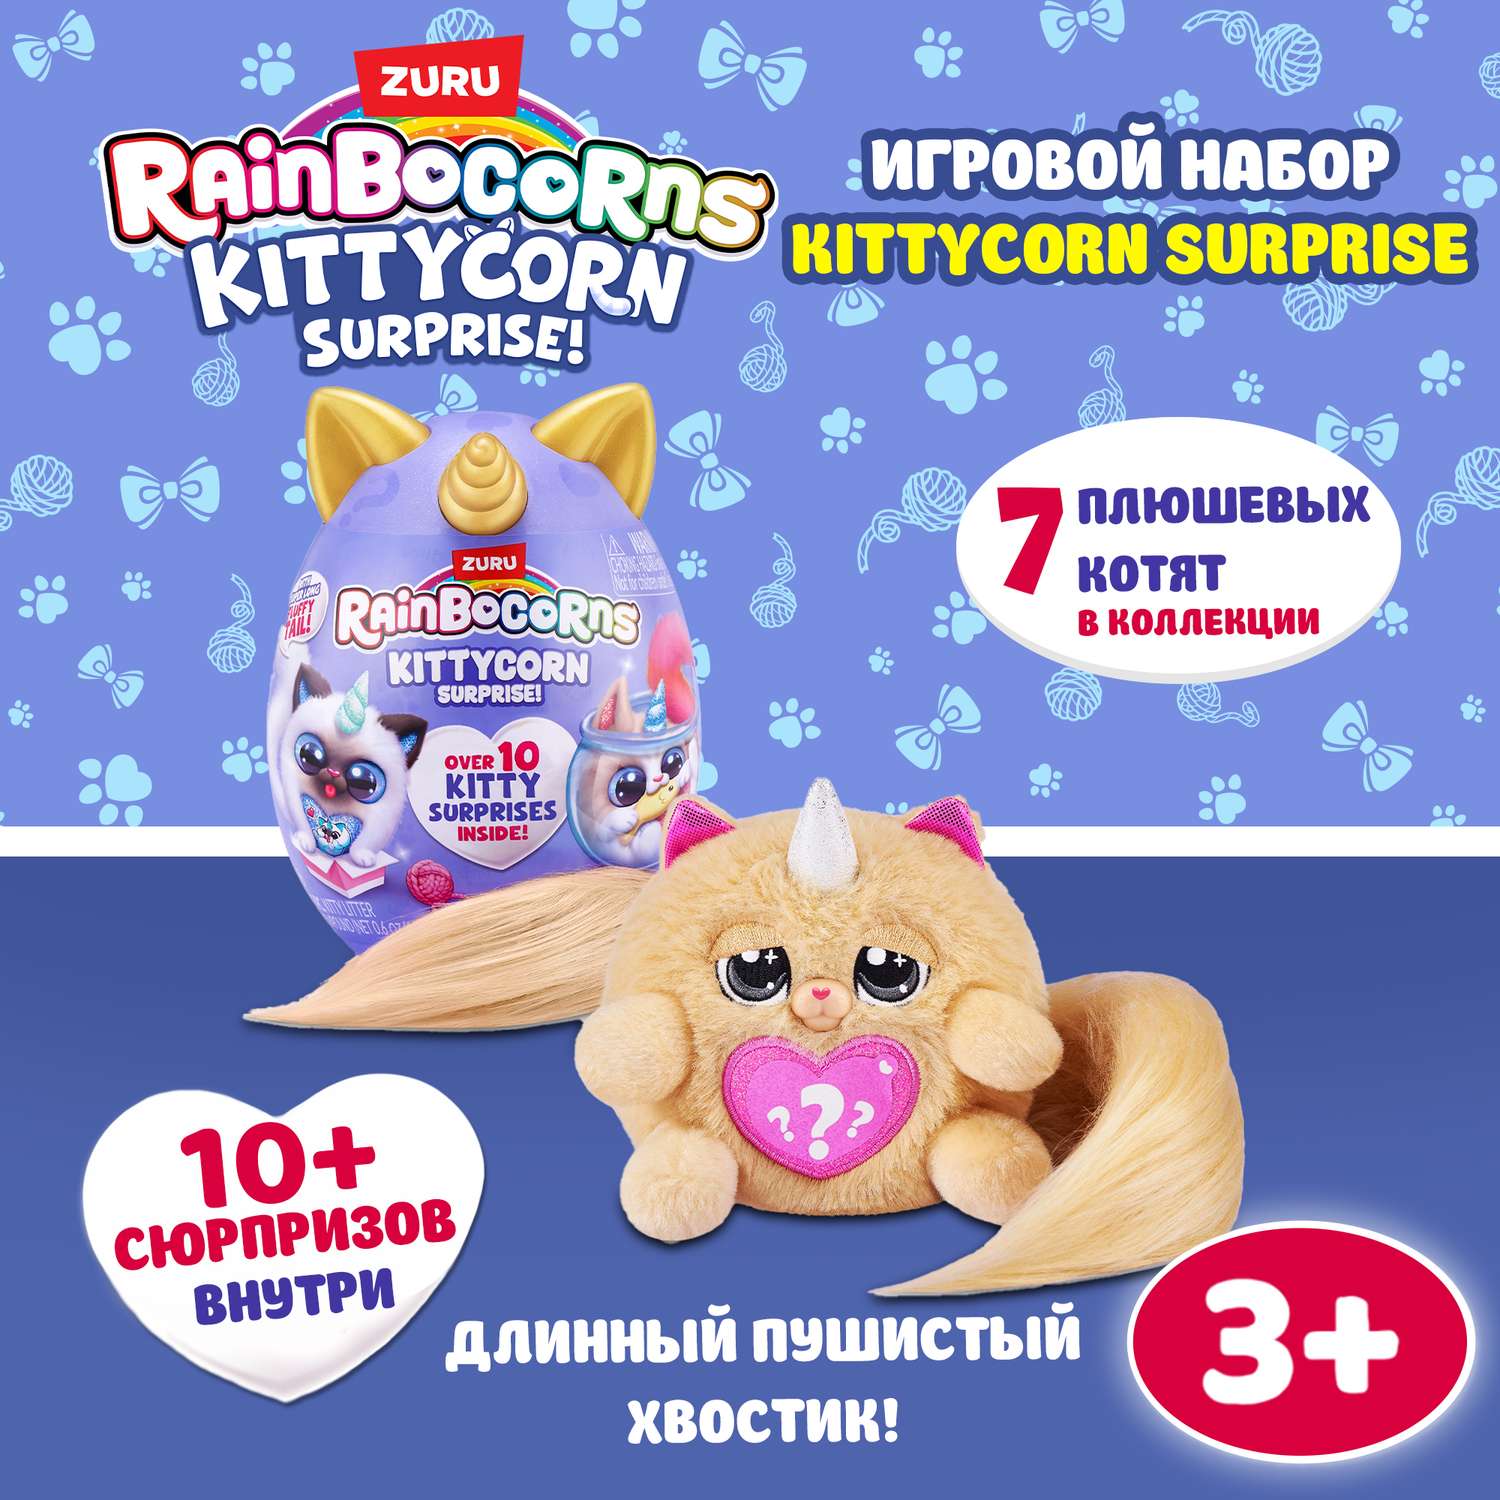 Игрушка Rainbocorns Kittycorn маленький в непрозрачной упаковке (Сюрприз) 92104TQ2-S002 - фото 1